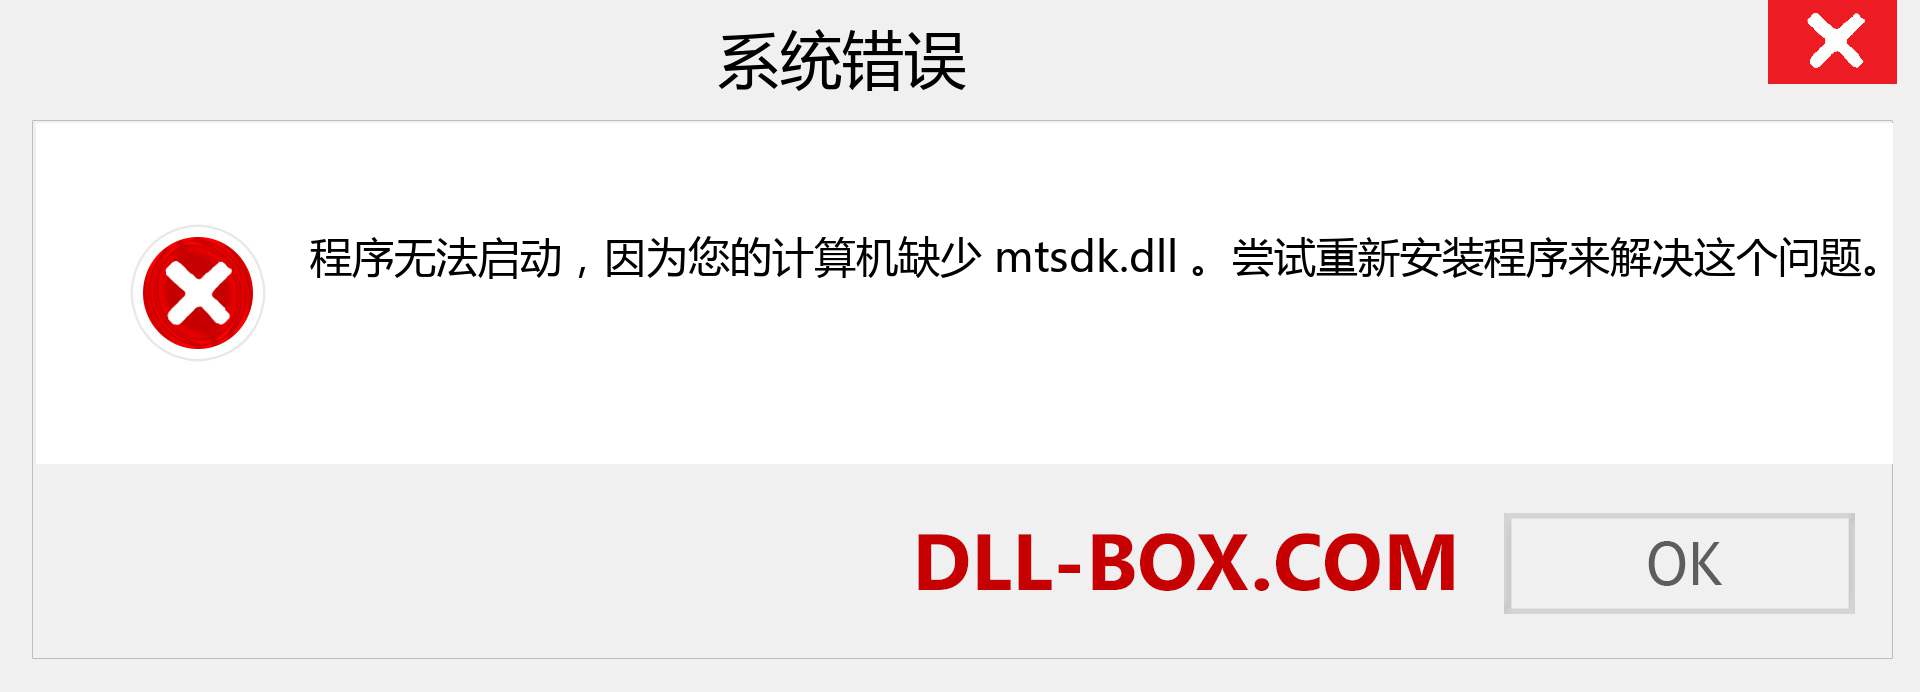 mtsdk.dll 文件丢失？。 适用于 Windows 7、8、10 的下载 - 修复 Windows、照片、图像上的 mtsdk dll 丢失错误